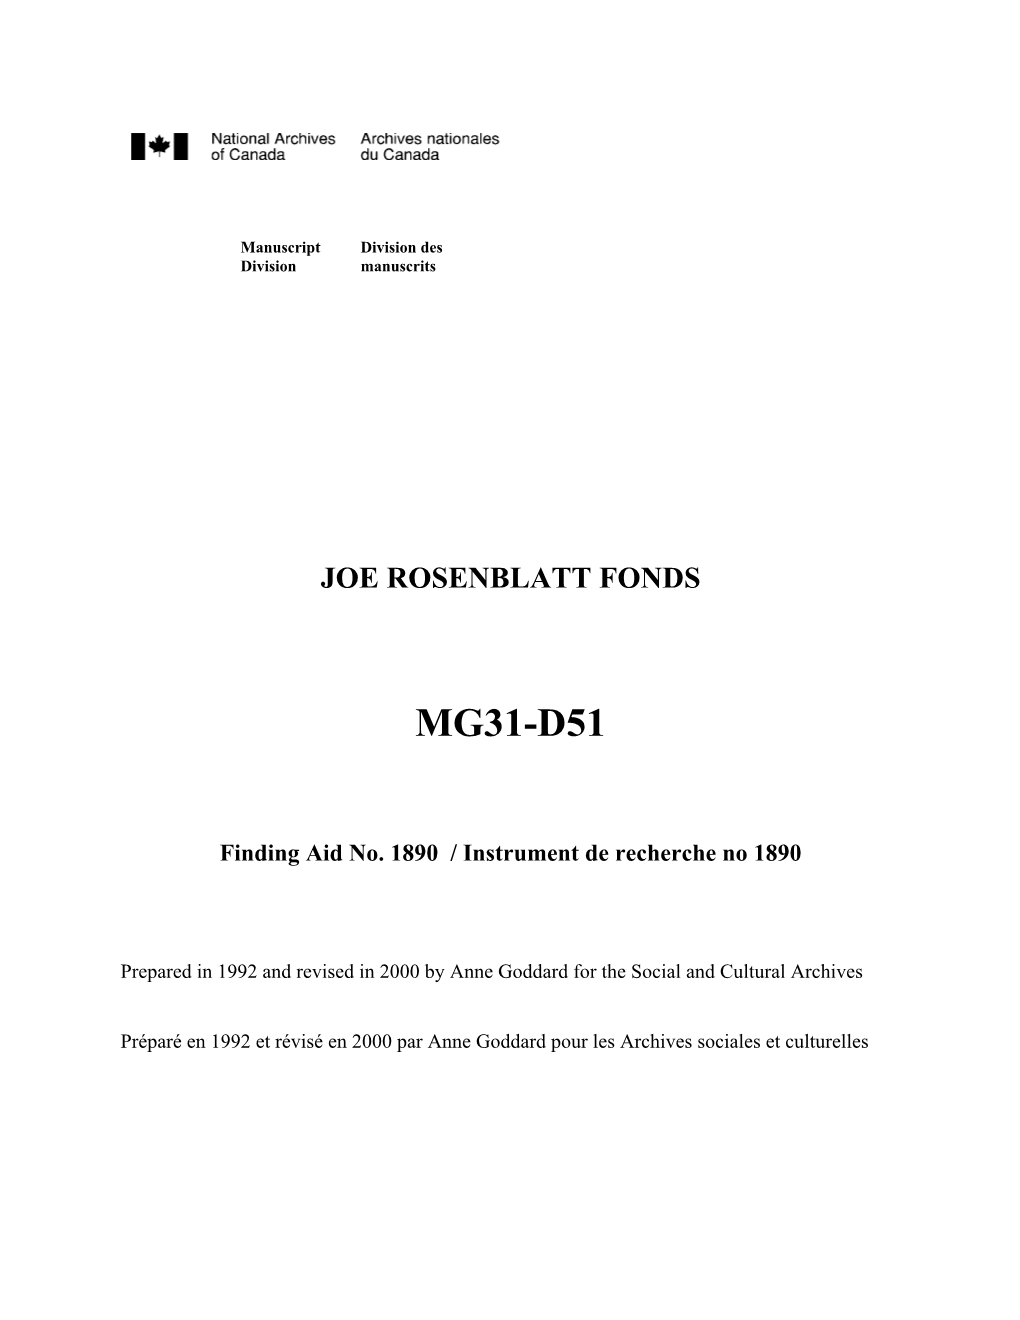 Joe Rosenblatt Fonds Mg31-D51